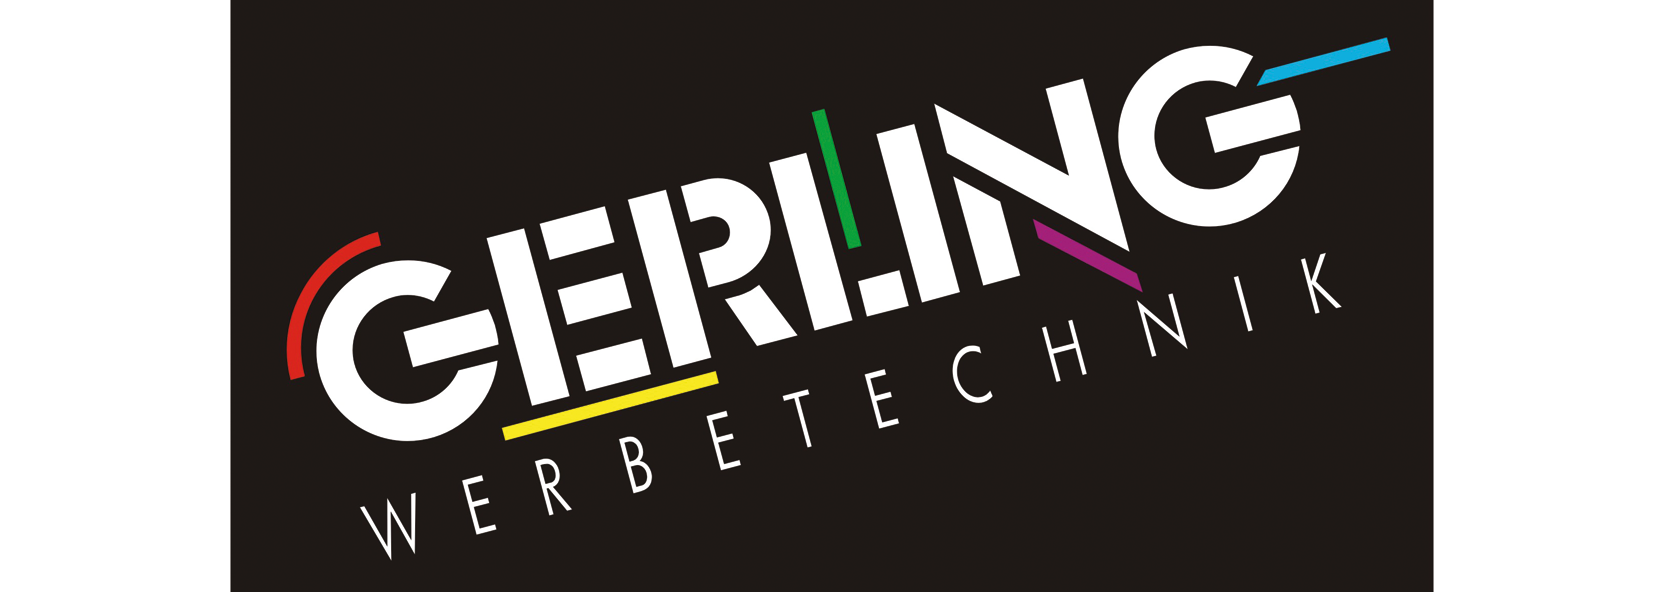 Gerling Werbetechnik GmbH